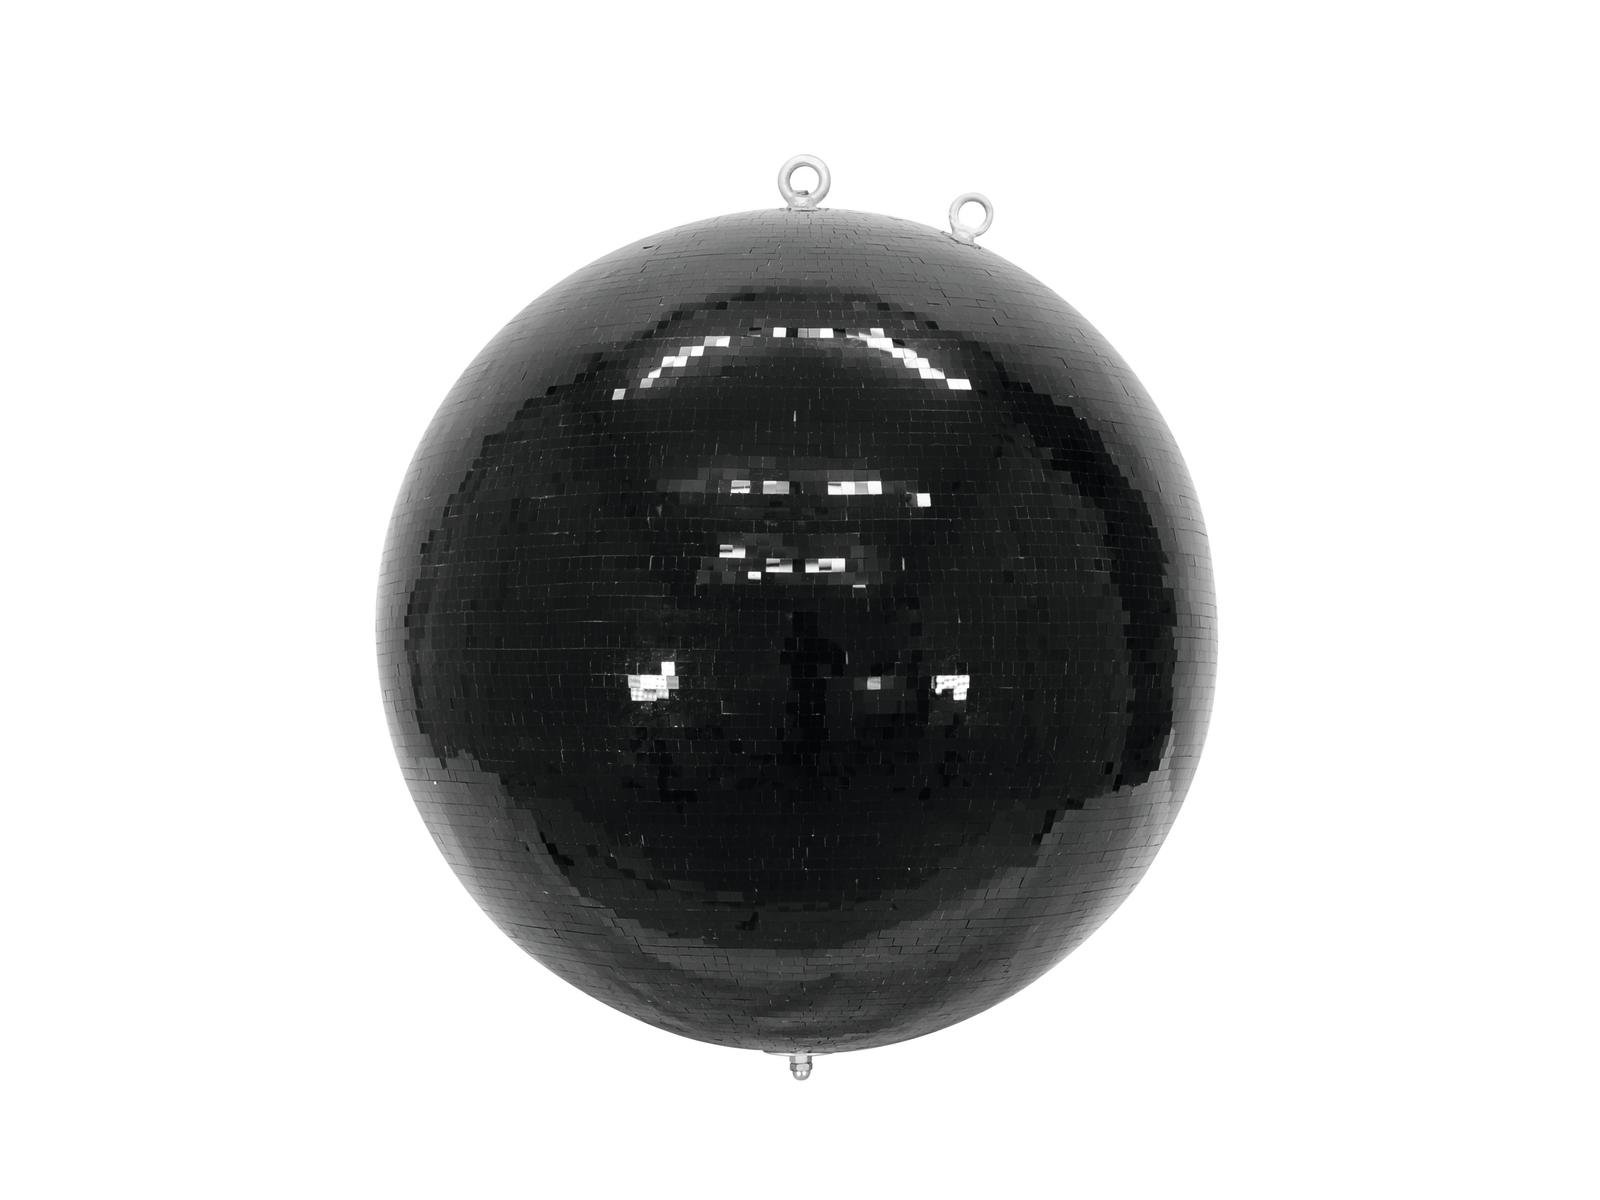 Spiegelkugel 200cm schwarz- Diskokugel (Discokugel) Party Lichteffekt - Echtglas - mirrorball safety black color